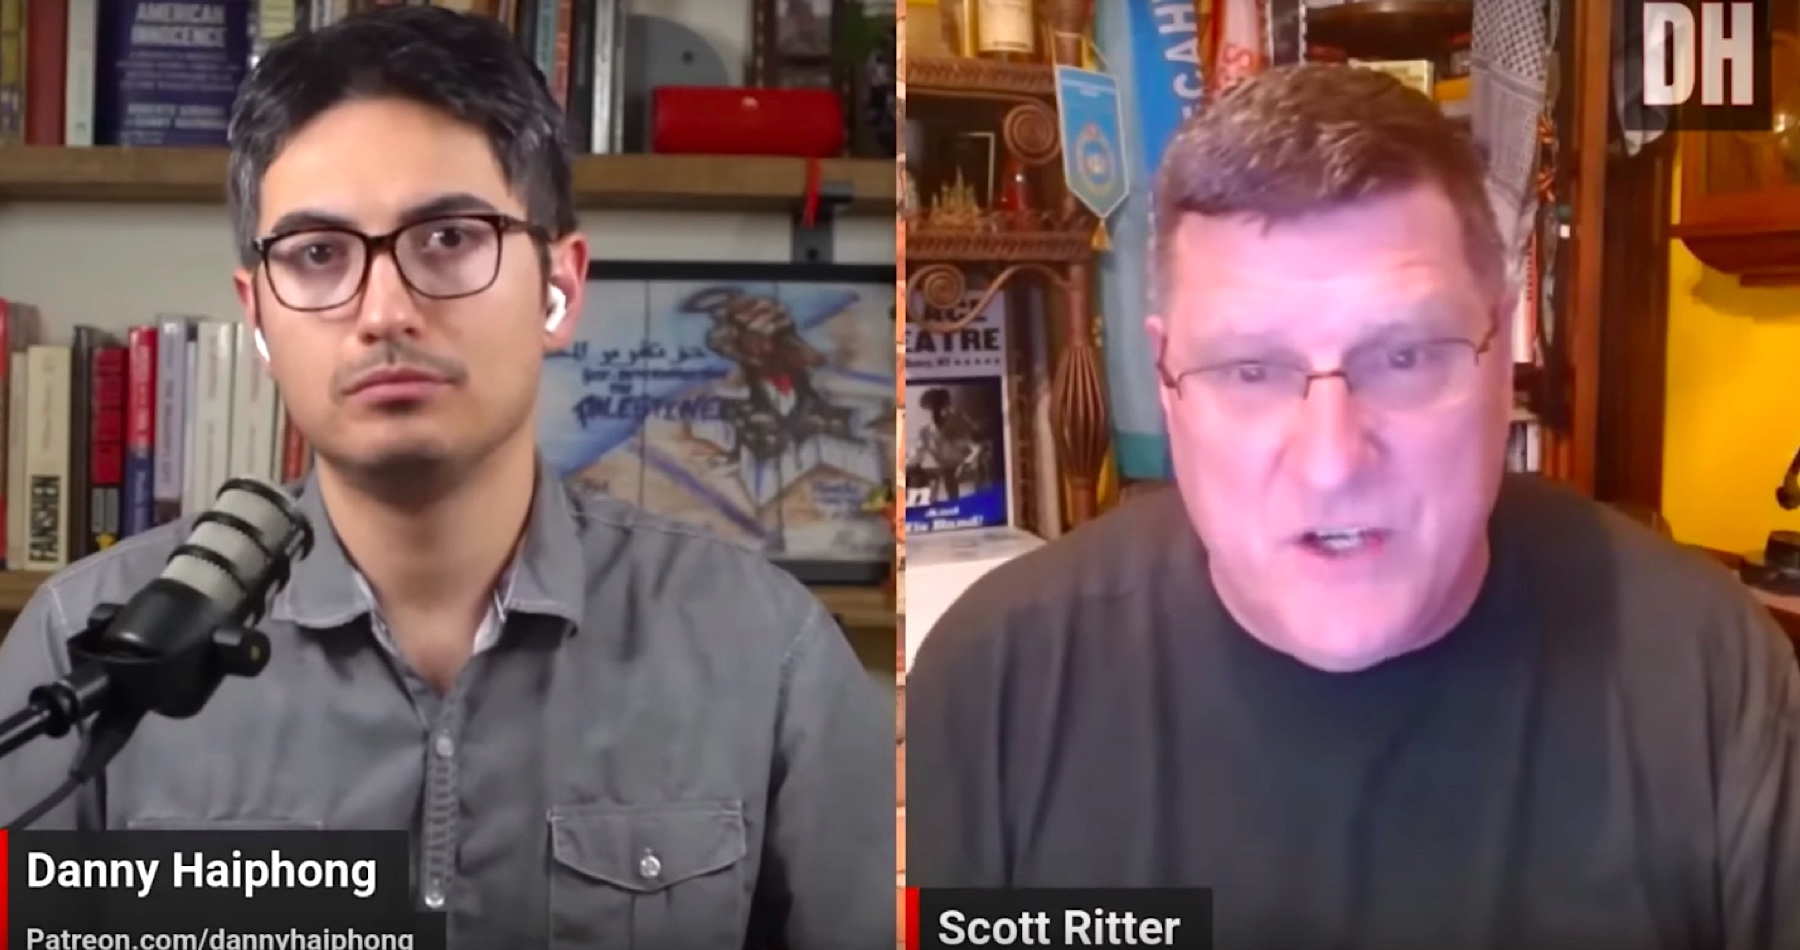 VIDEO: Žijeme vo svete, ktorý sa nachádza v prechodnom období. USA proti tejto realite tvrdo bojujú, pretože to znamená koniec americkej výnimočnosti. Amerika bude mať problémy bez ohľadu na to, kto vyhrá voľby. Trumpovou stratégiou je chaos, tvrdí bývalý zbrojný inšpektor OSN Scott Ritter